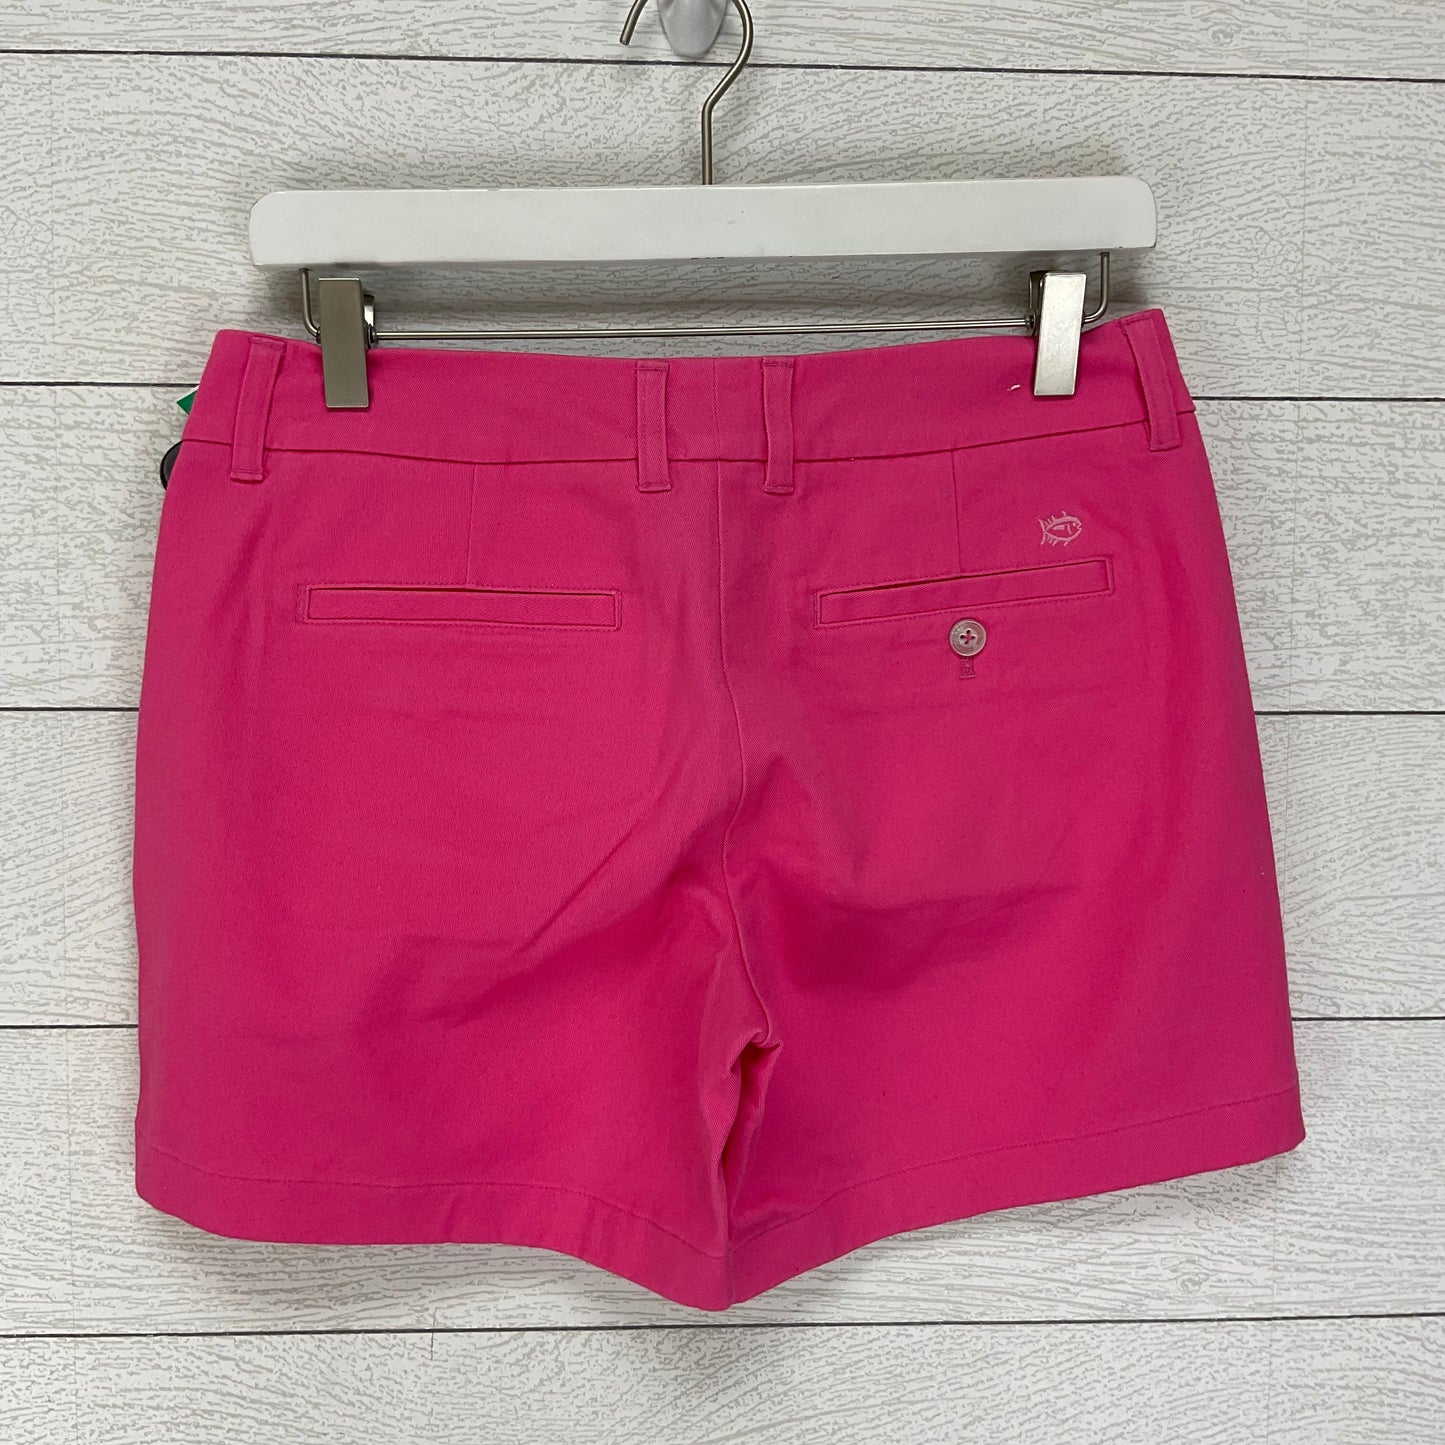 Shorts By Southern Tide  Size: 2